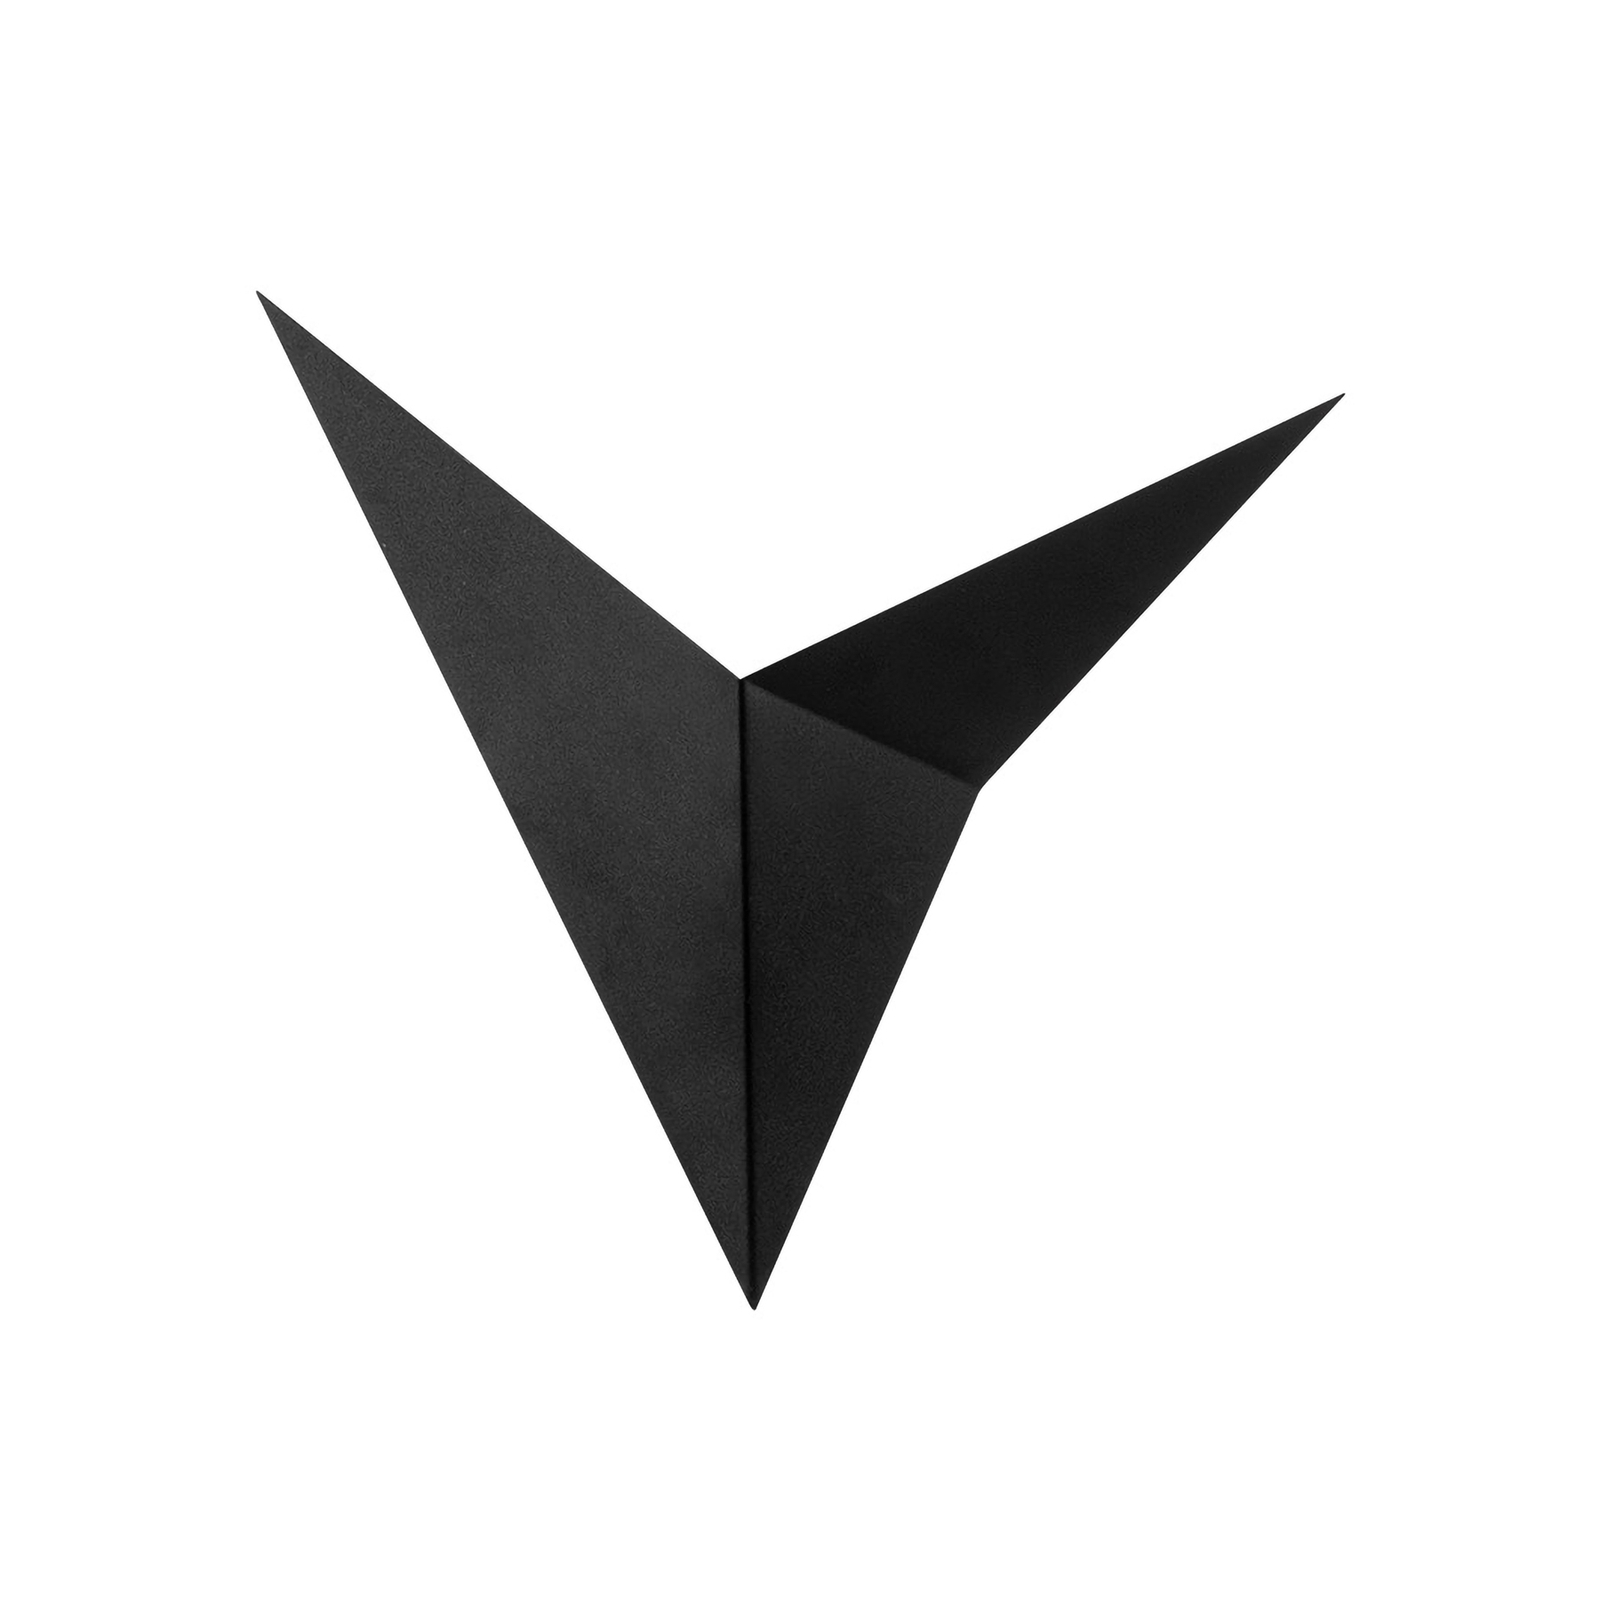 Vägguplight Bird 3201, triangulär, svart